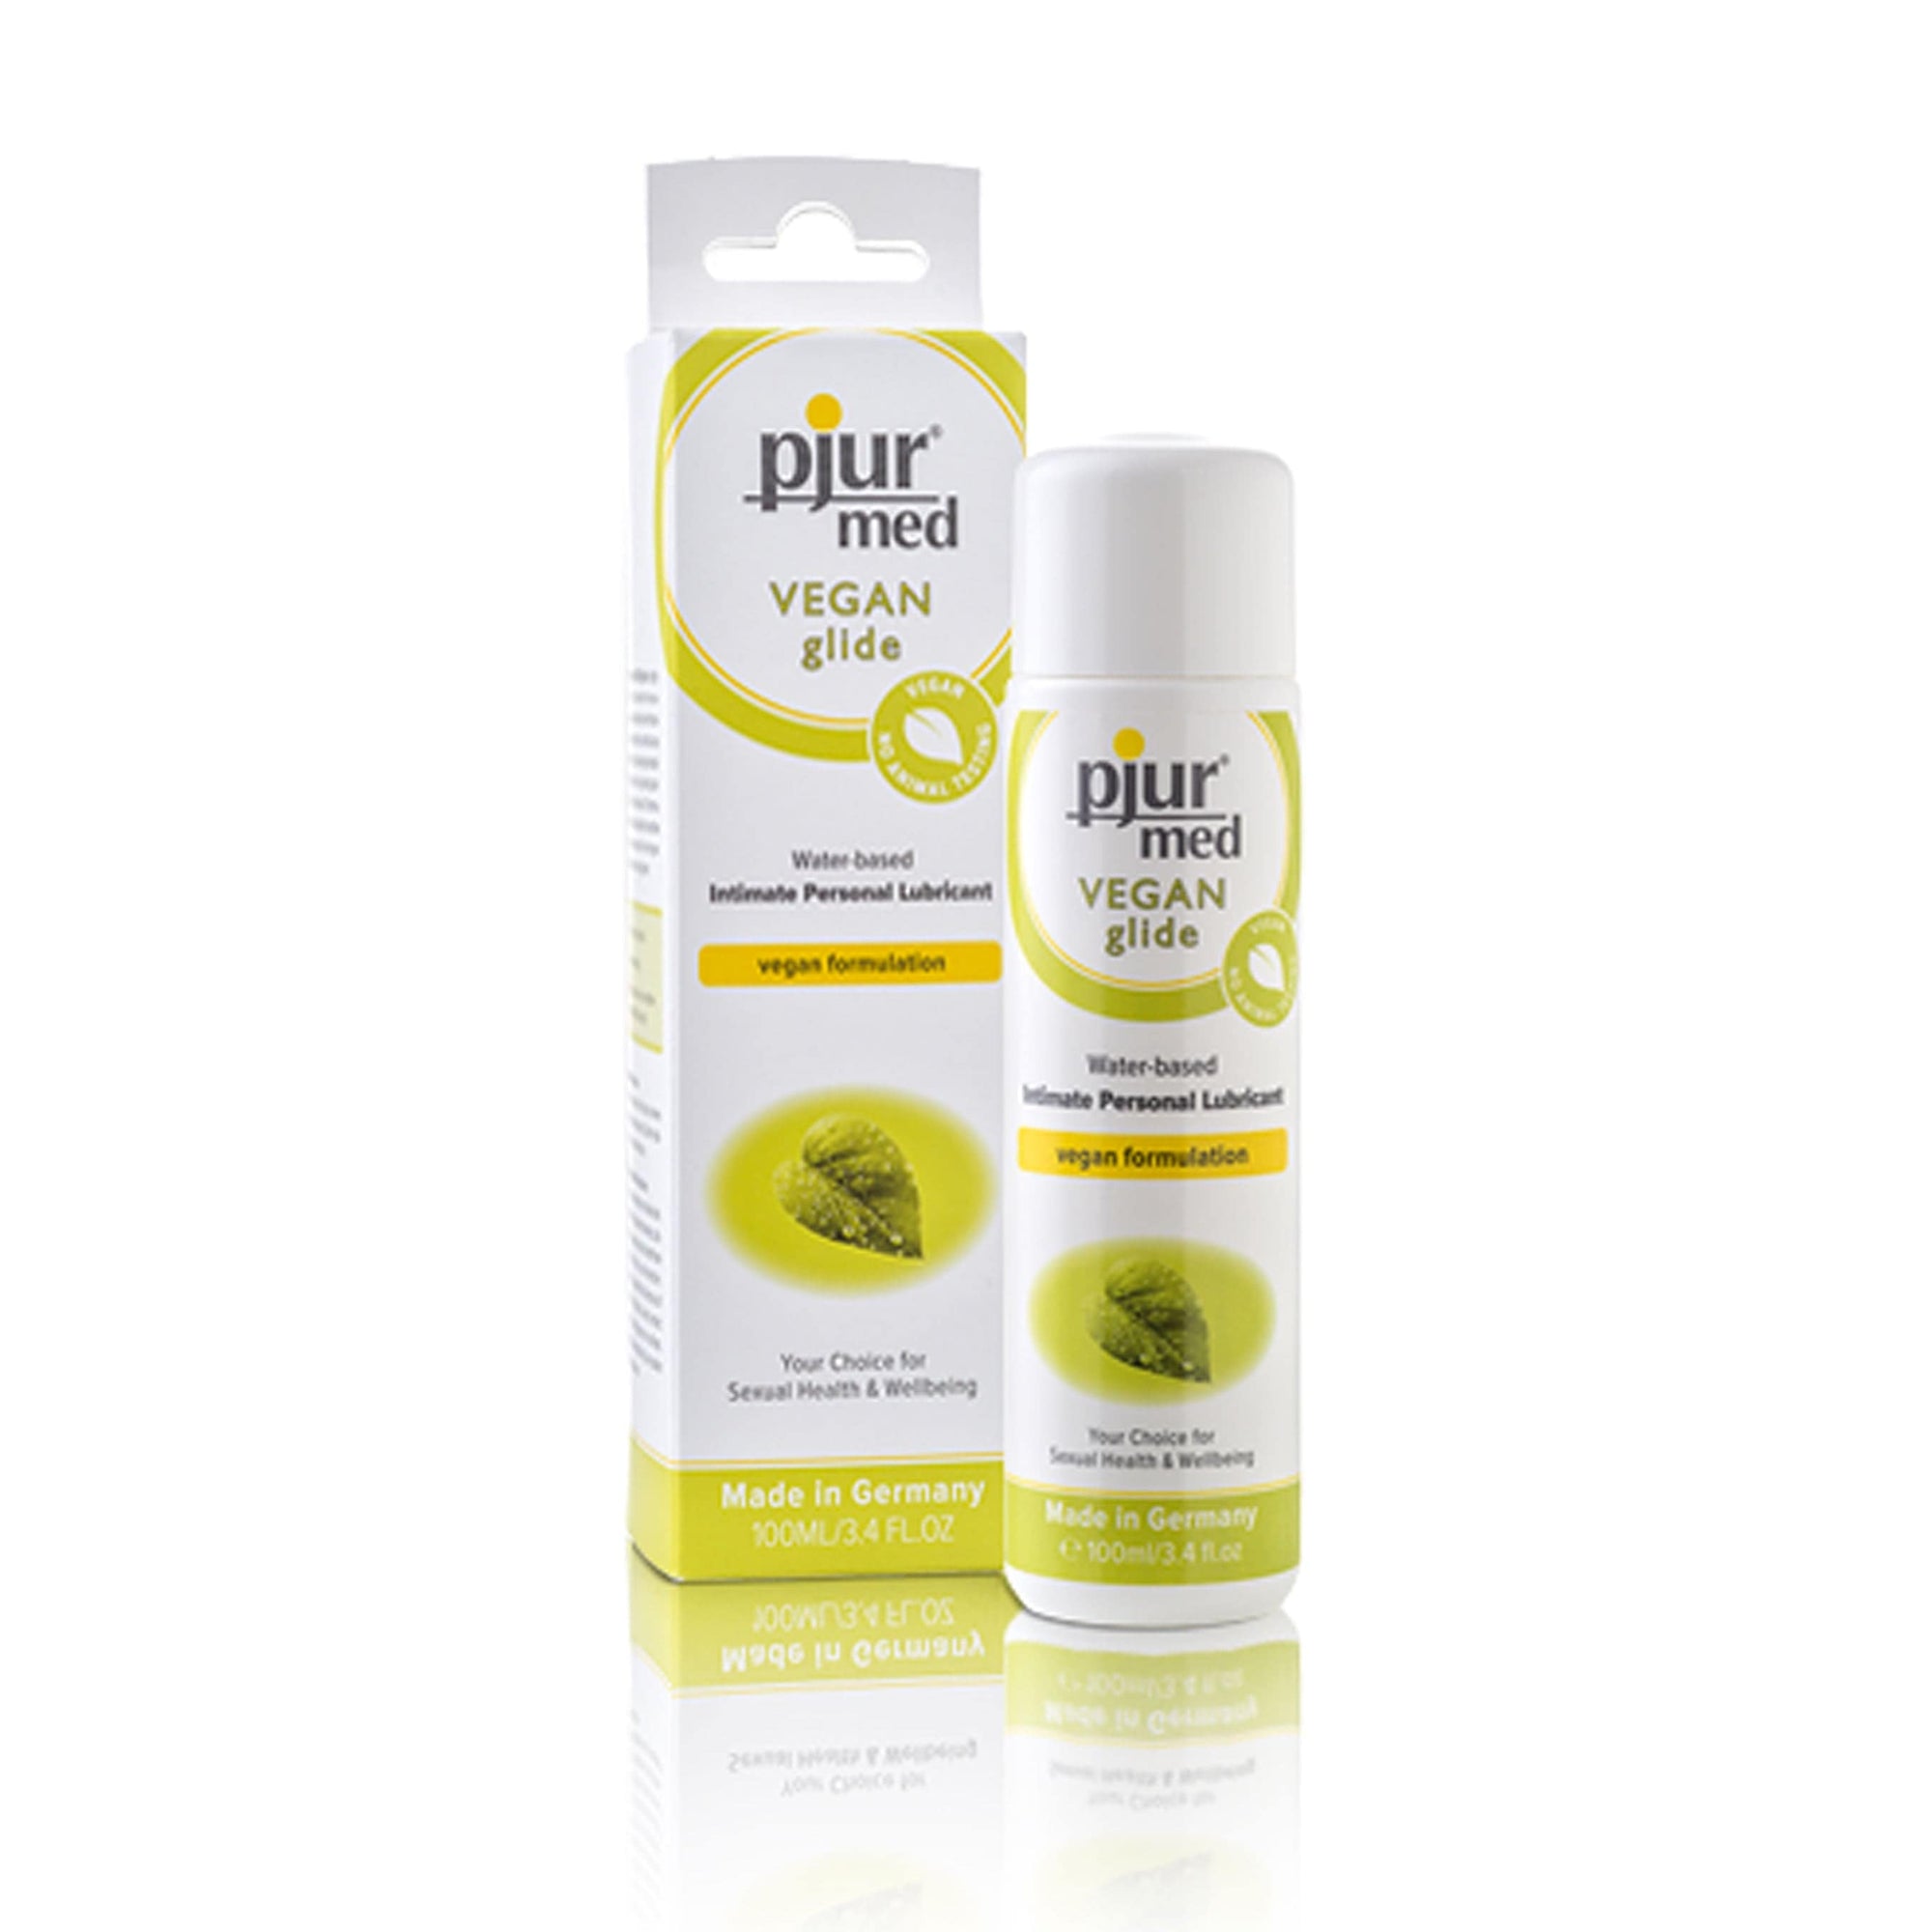 Pjur - Med Vegan Glide Water Based Intimate Personal Lubricant 100ml Lube (Water Based) 827160111373 CherryAffairs